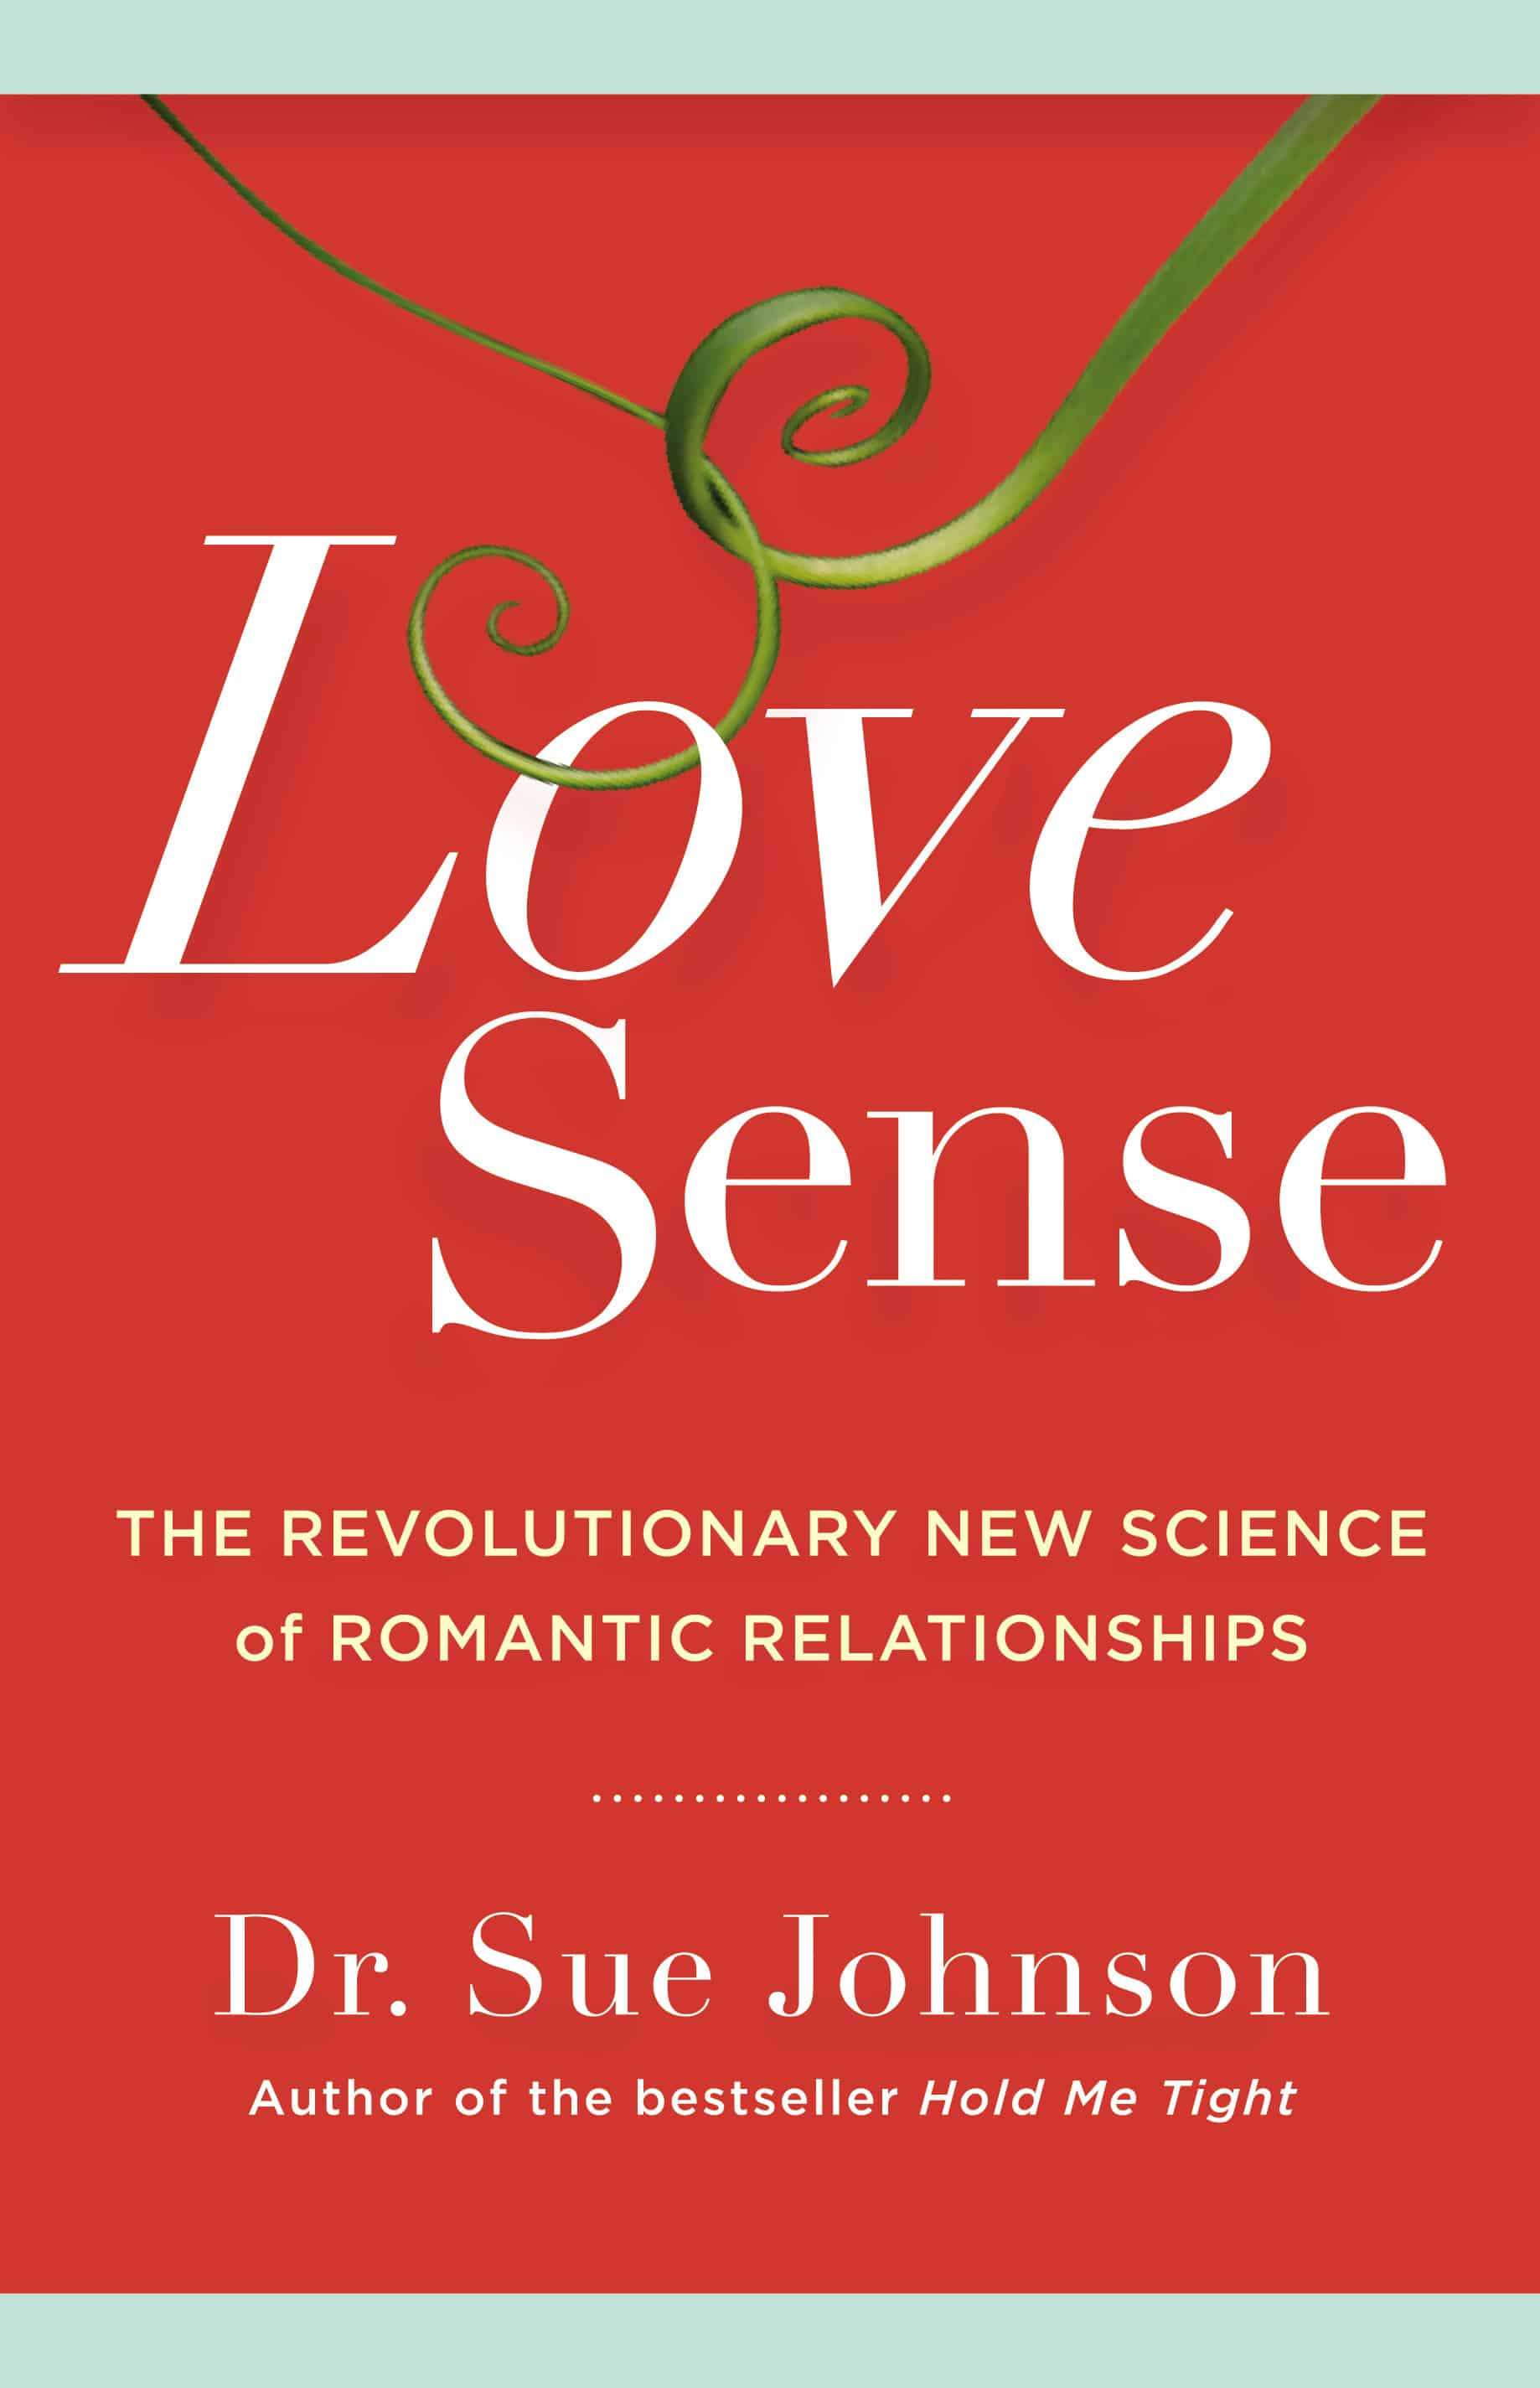 Love sense review